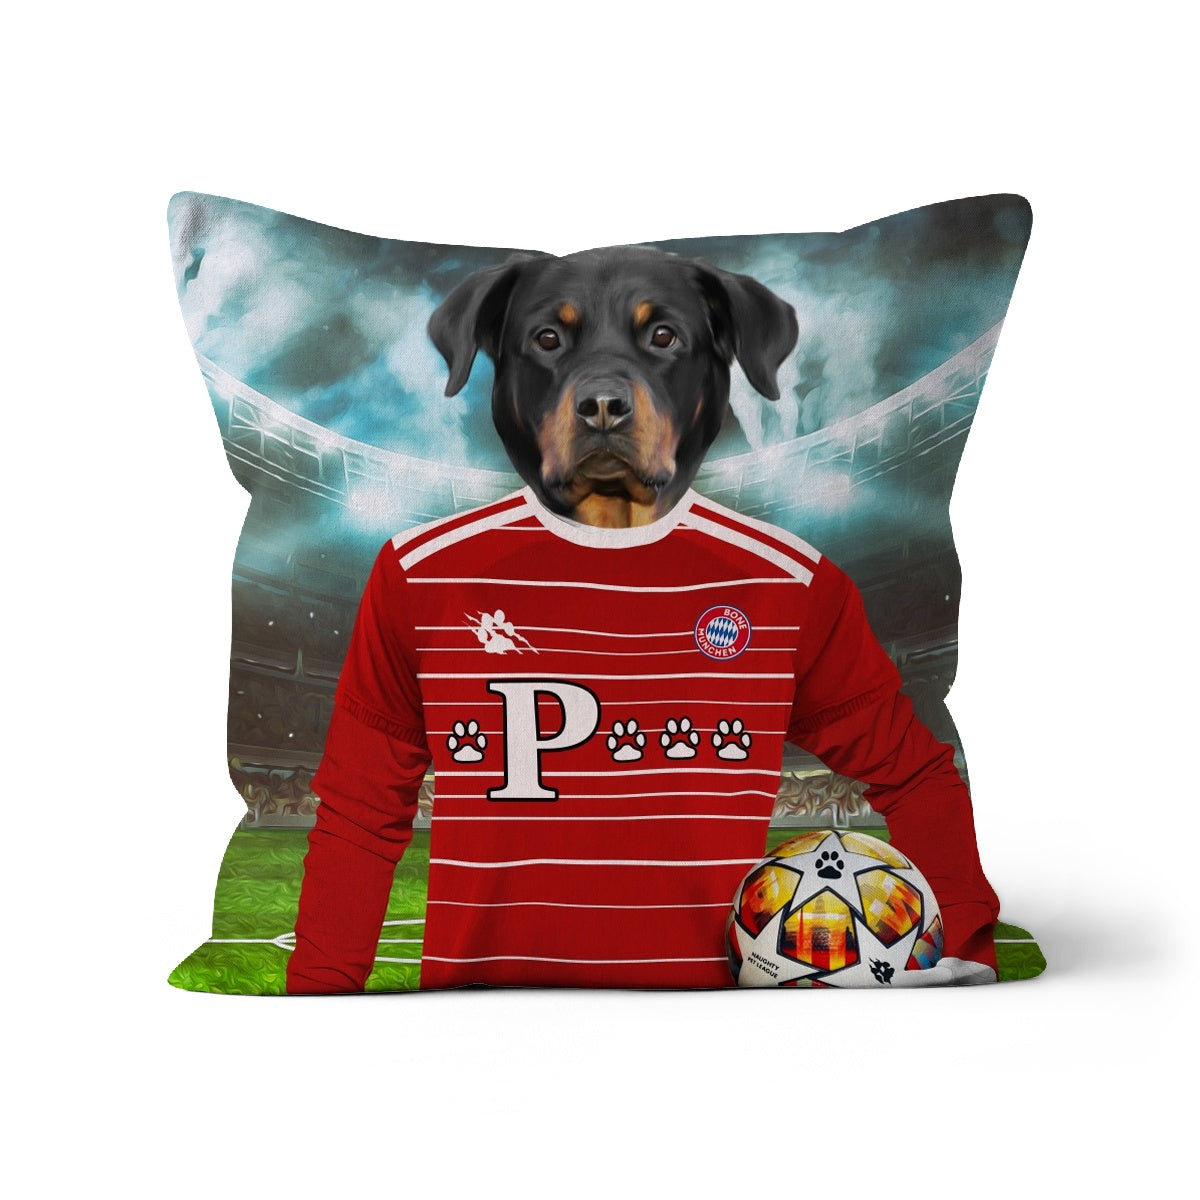 Pawyern Munich Football Club Paw & Glory, pawandglory, dog print pillow, make your pet a pillow, portrait pillow, pillow of my dog, best pet pillow, custom pillow design, Pet Portrait cushion,